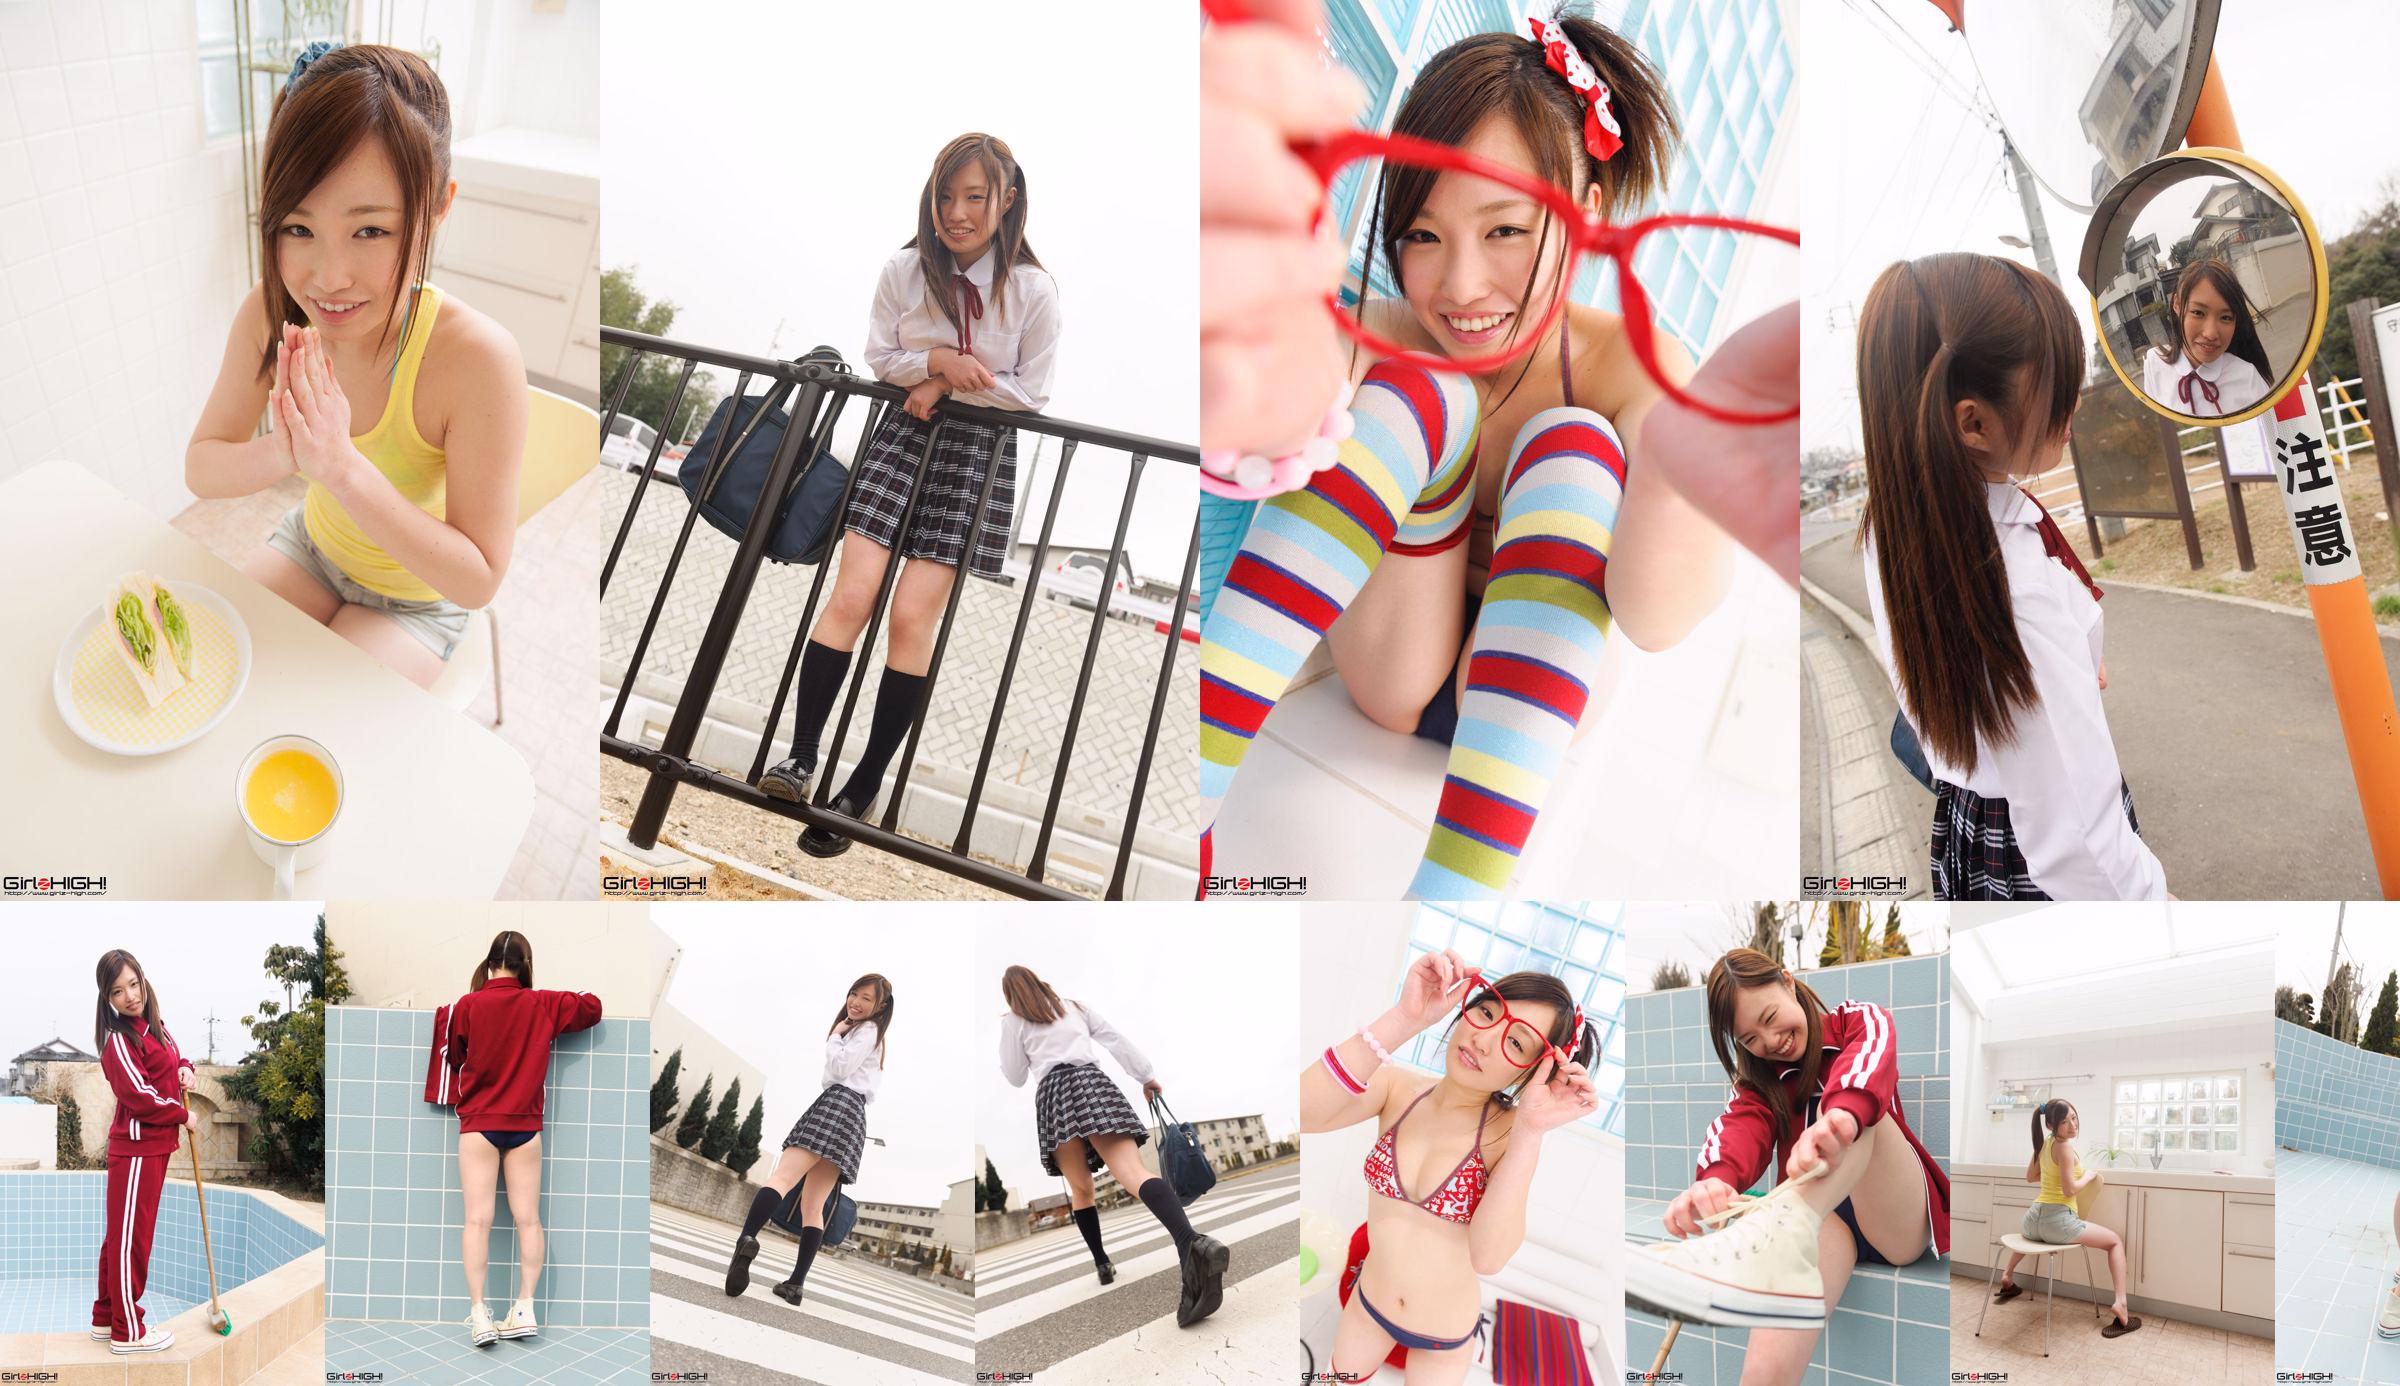 [Girlz-High] Yuno Natsuki Yuno Natsuki / Yuno Natsuki Gravure Gallery --g023 Photoset 02 No.8f771e 第1頁